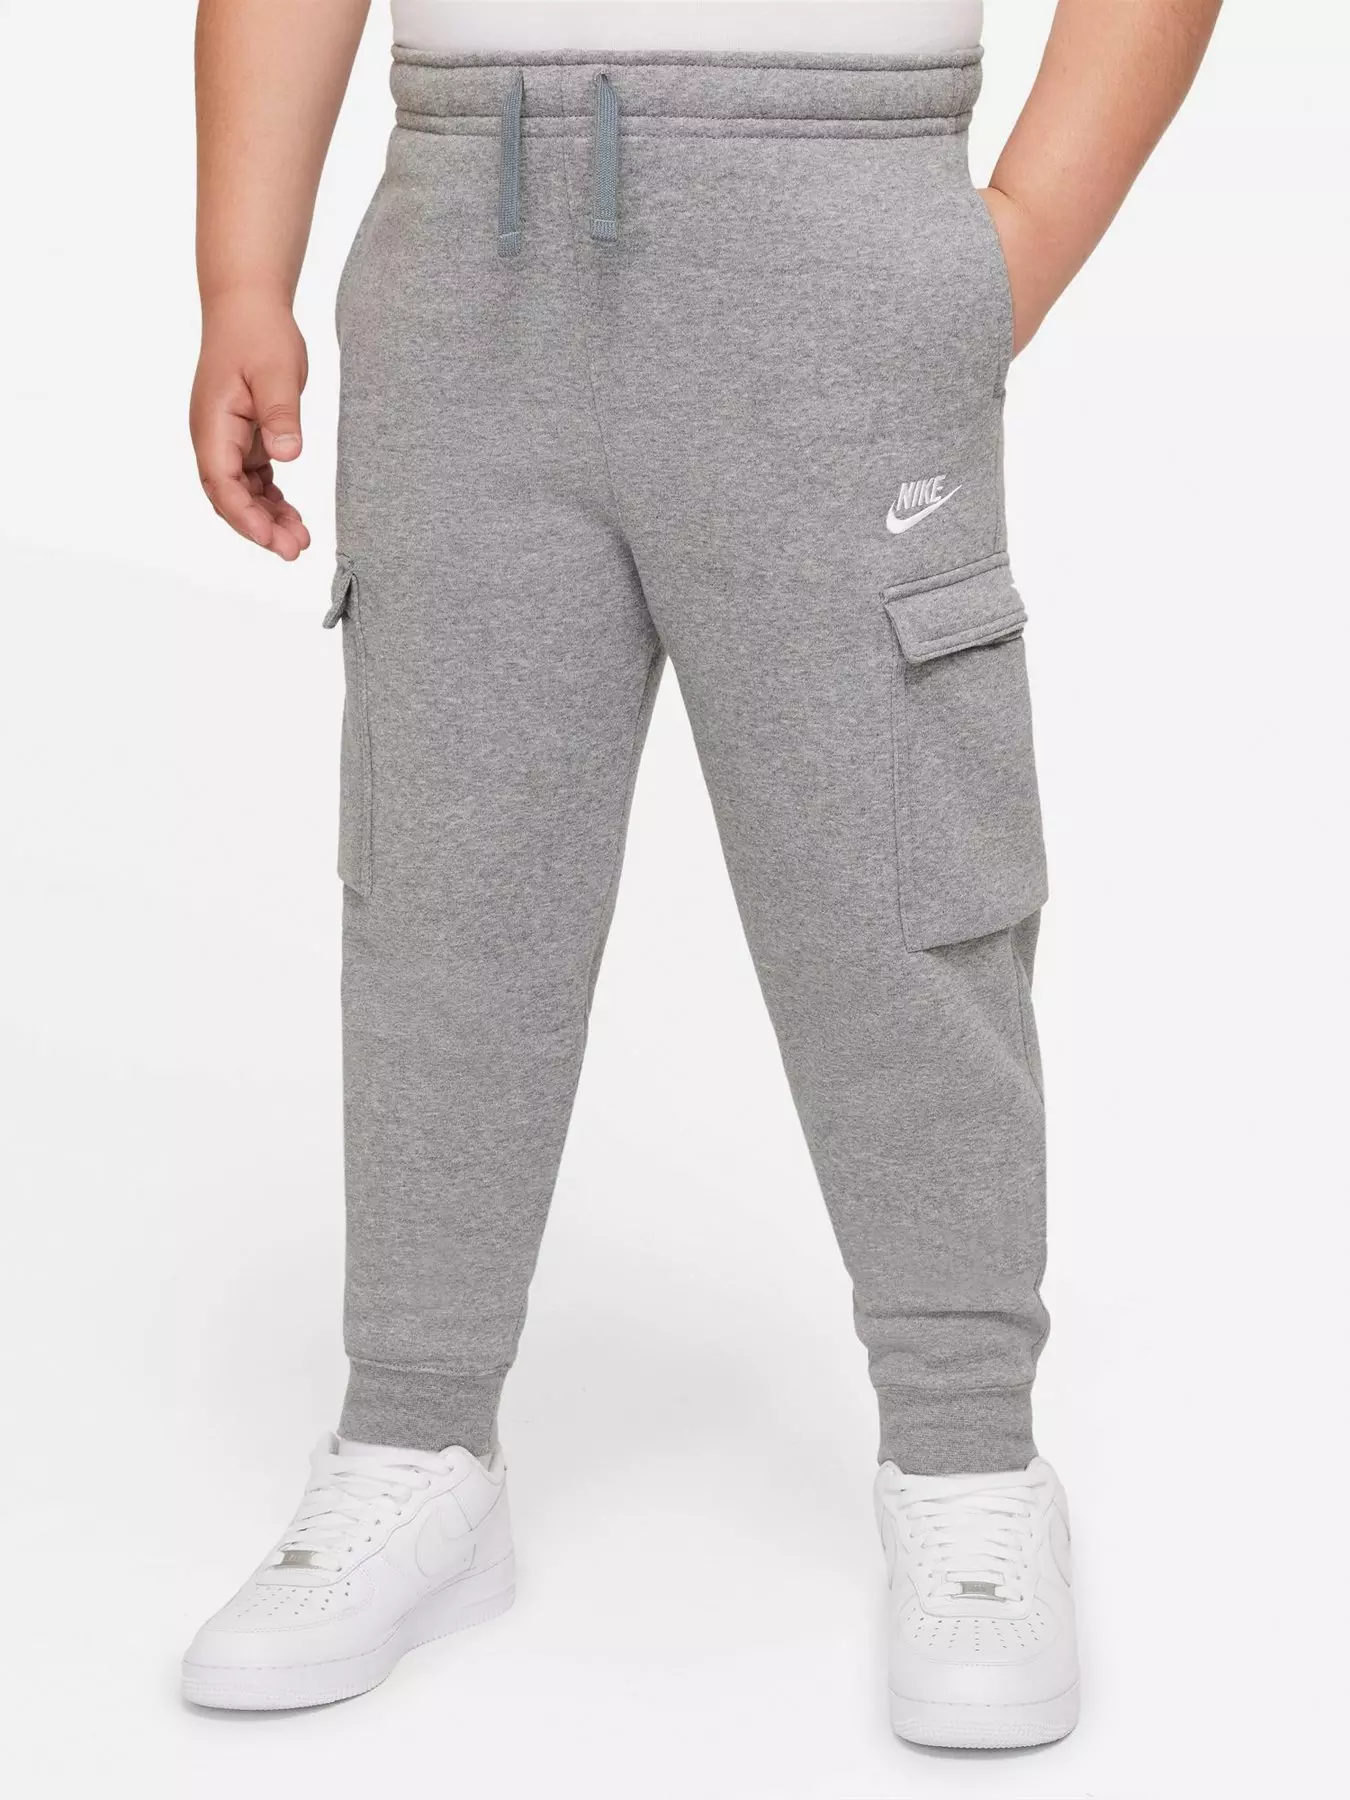 Nike Tech Cargo sweatpants in gray